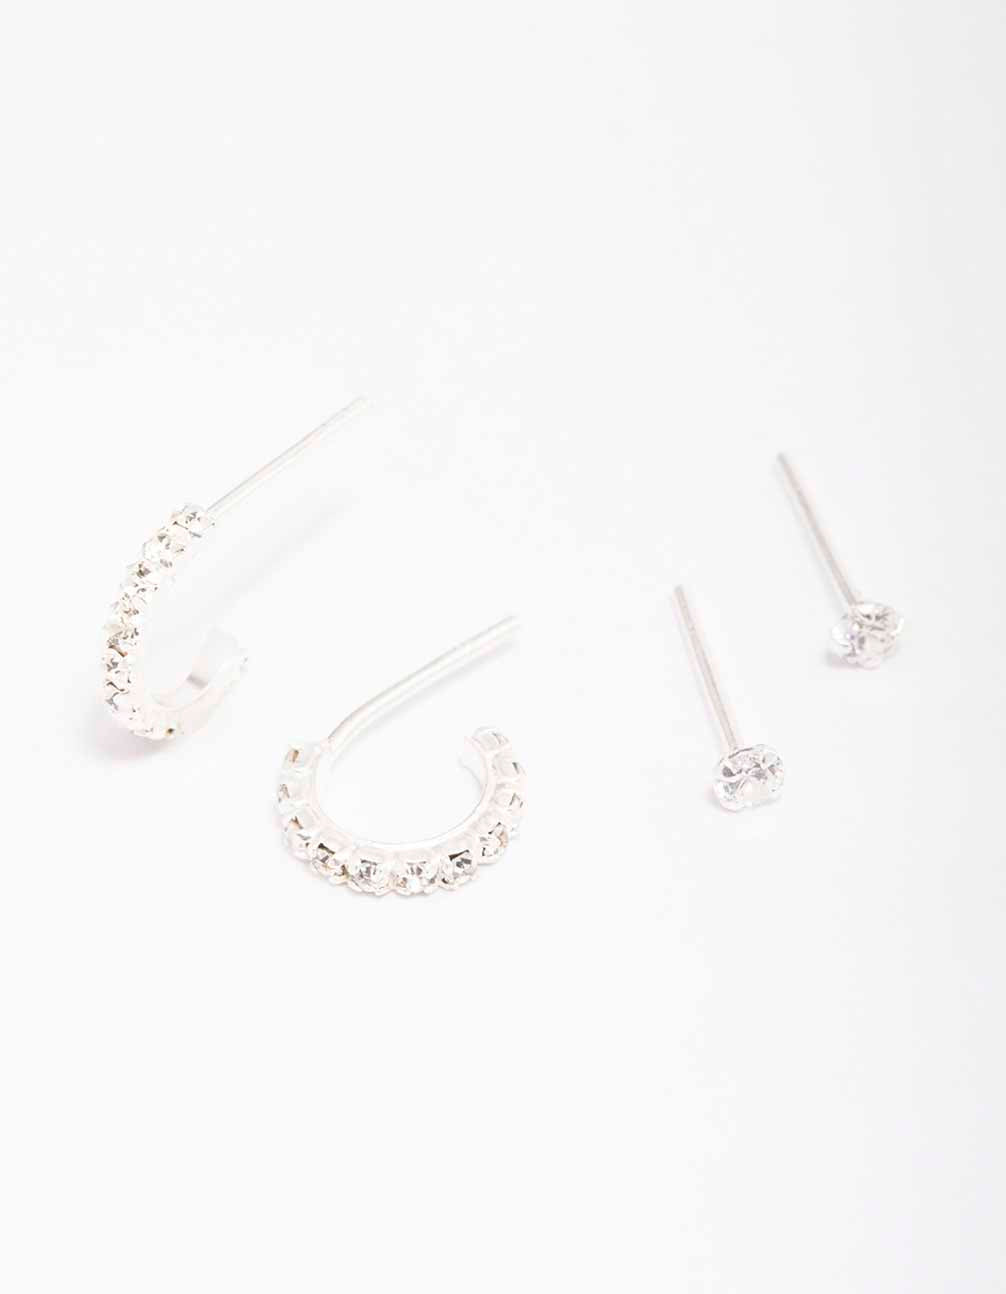 New Lovisa Sterling Silver Bracelet 925 & Freshwater Pearl Earrings Baroque  lot | eBay